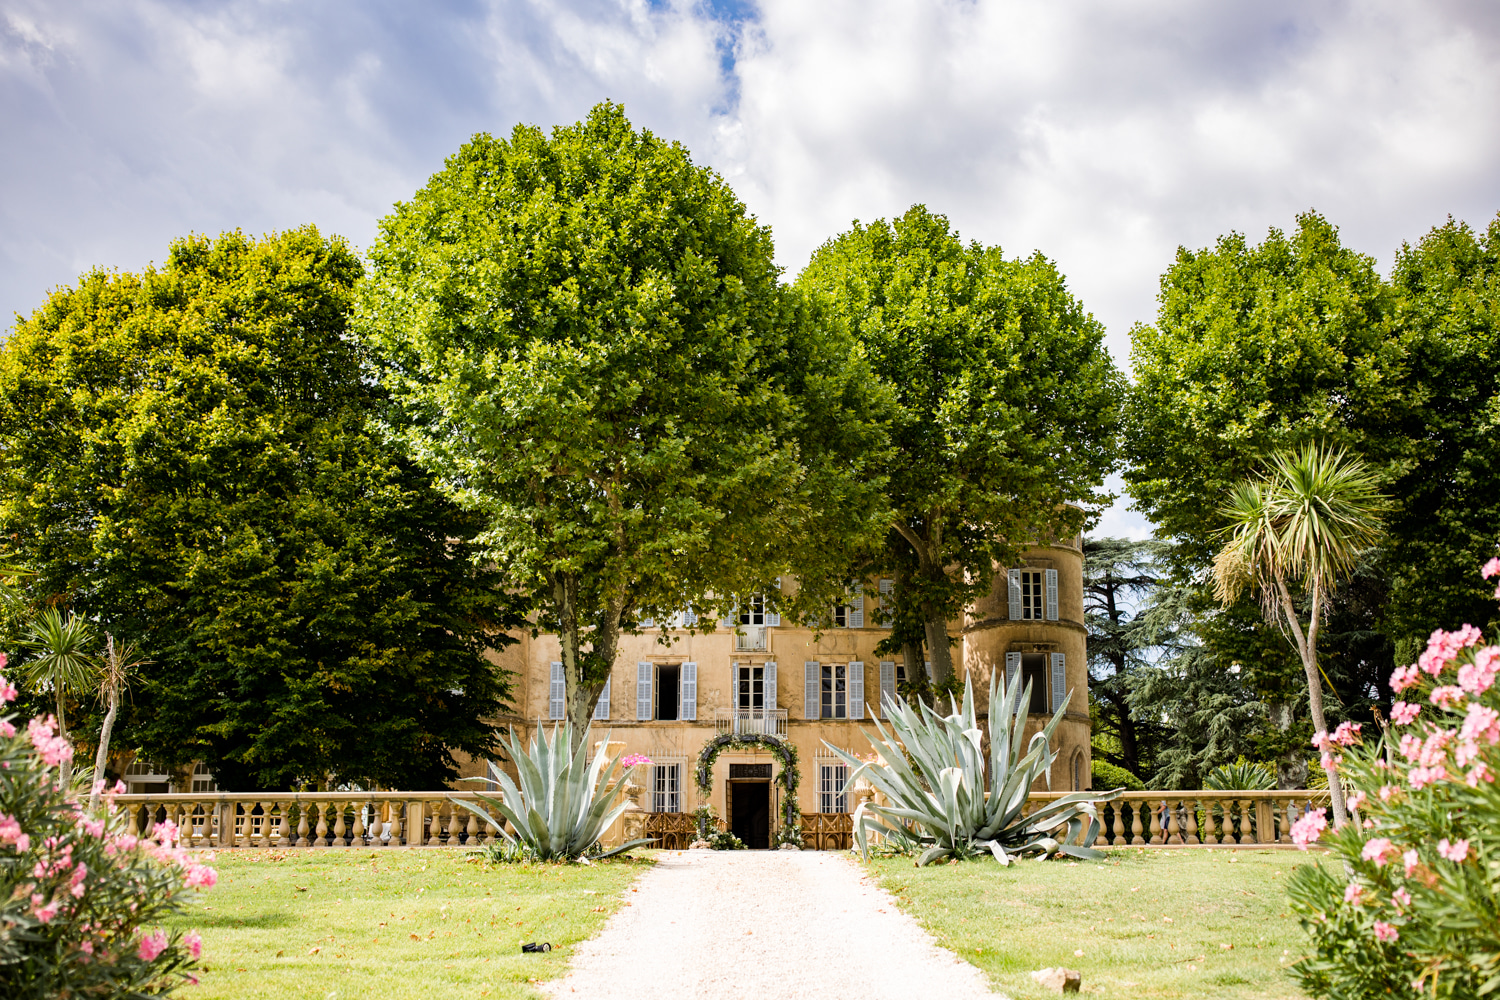 Mariage au Château de Robernier - Frédérique + Charlie - Blog Mariage Madame C